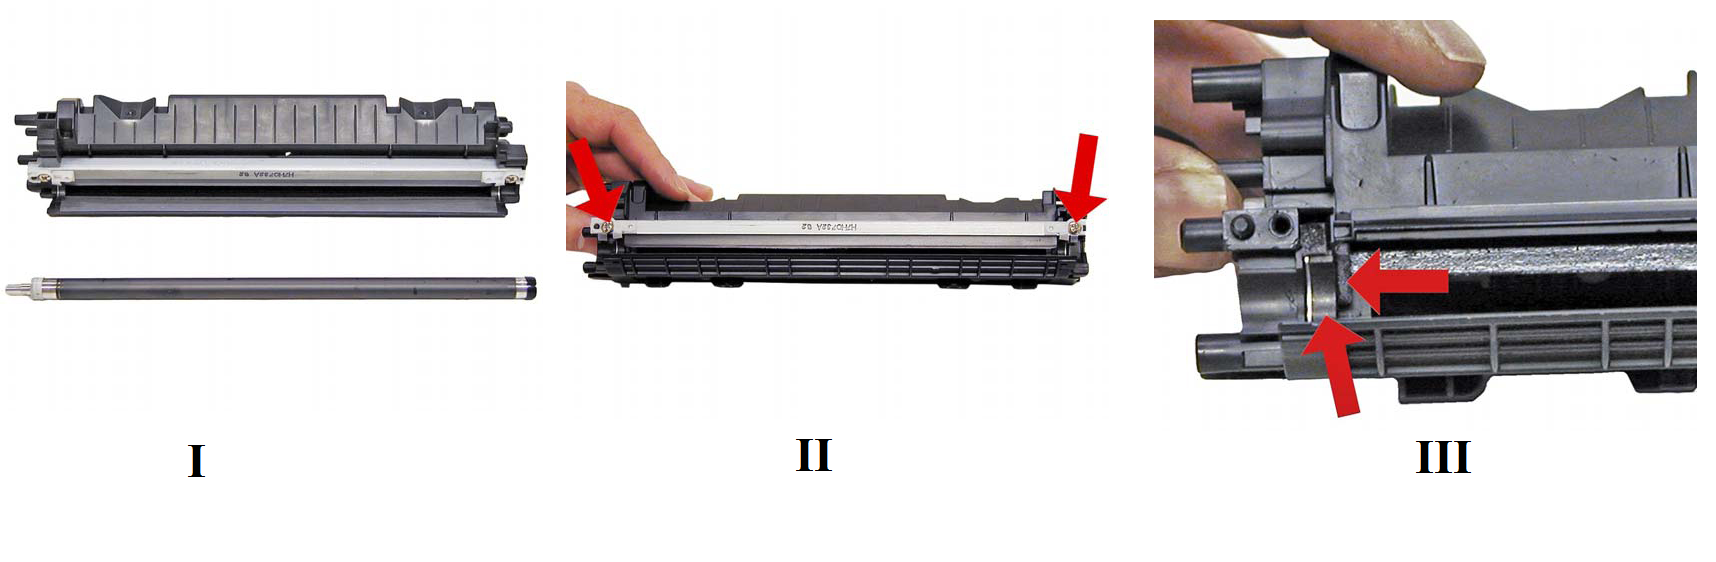 Принтер пишет замените картридж и тонер после заправки: что делать